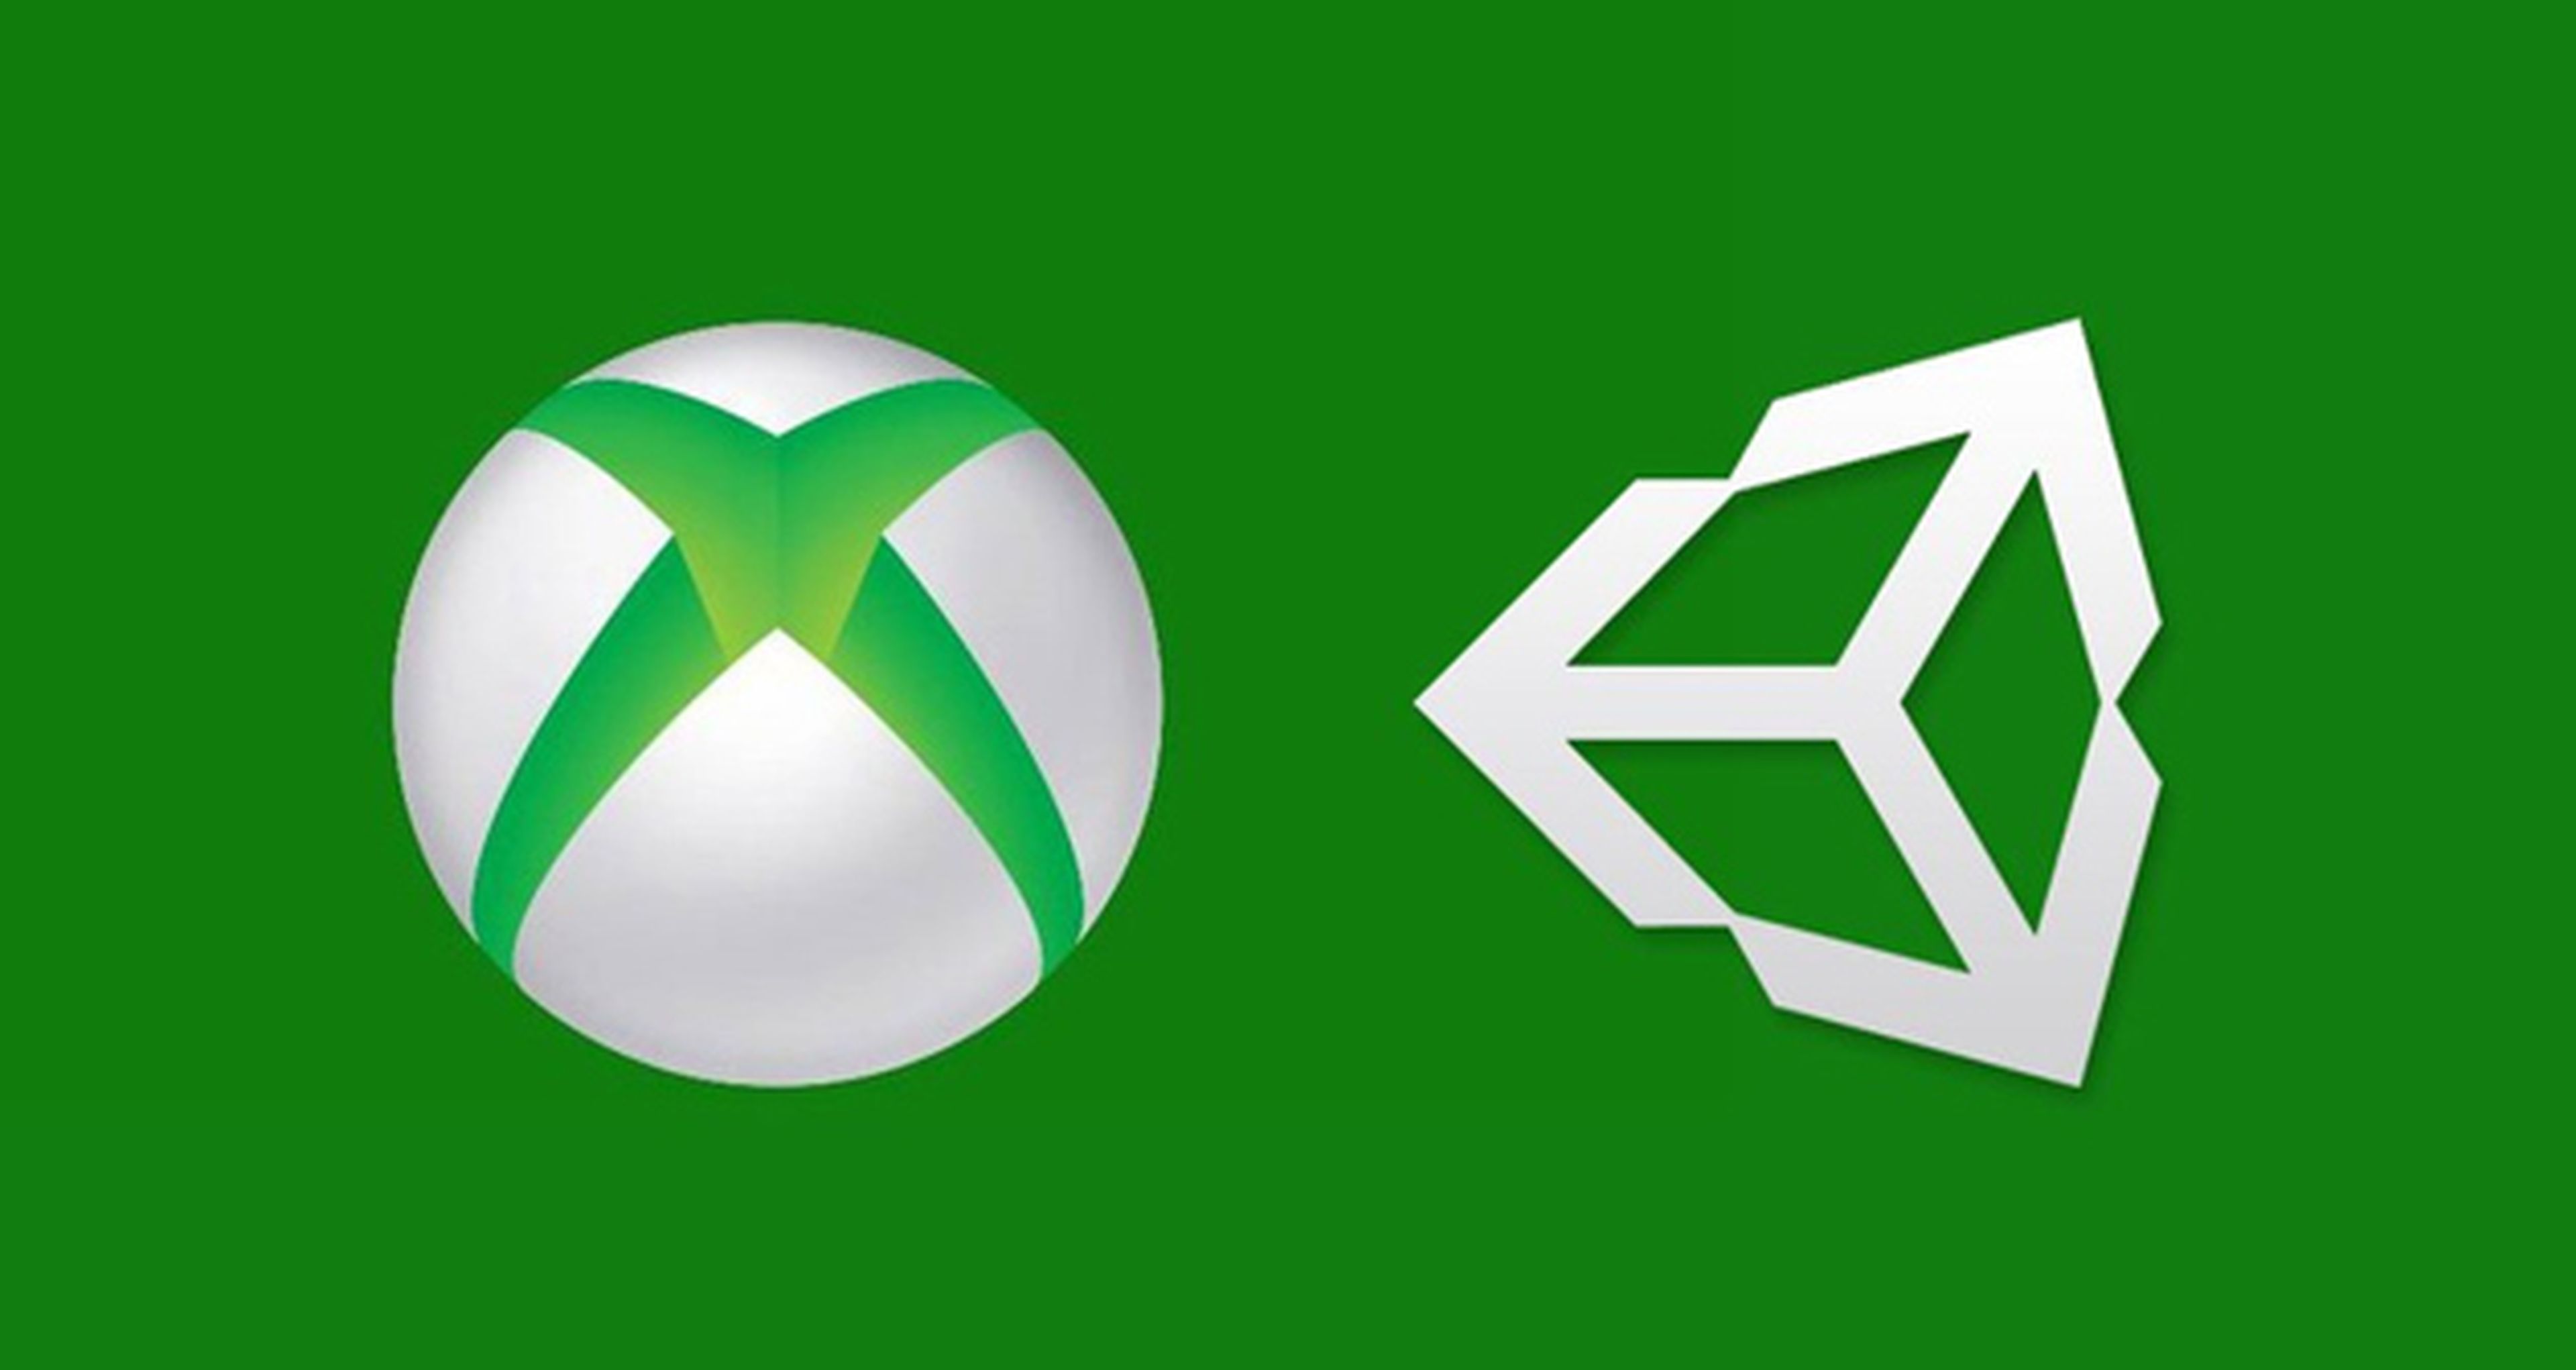 Unity 3D tendrá compatibilidad con Xbox One